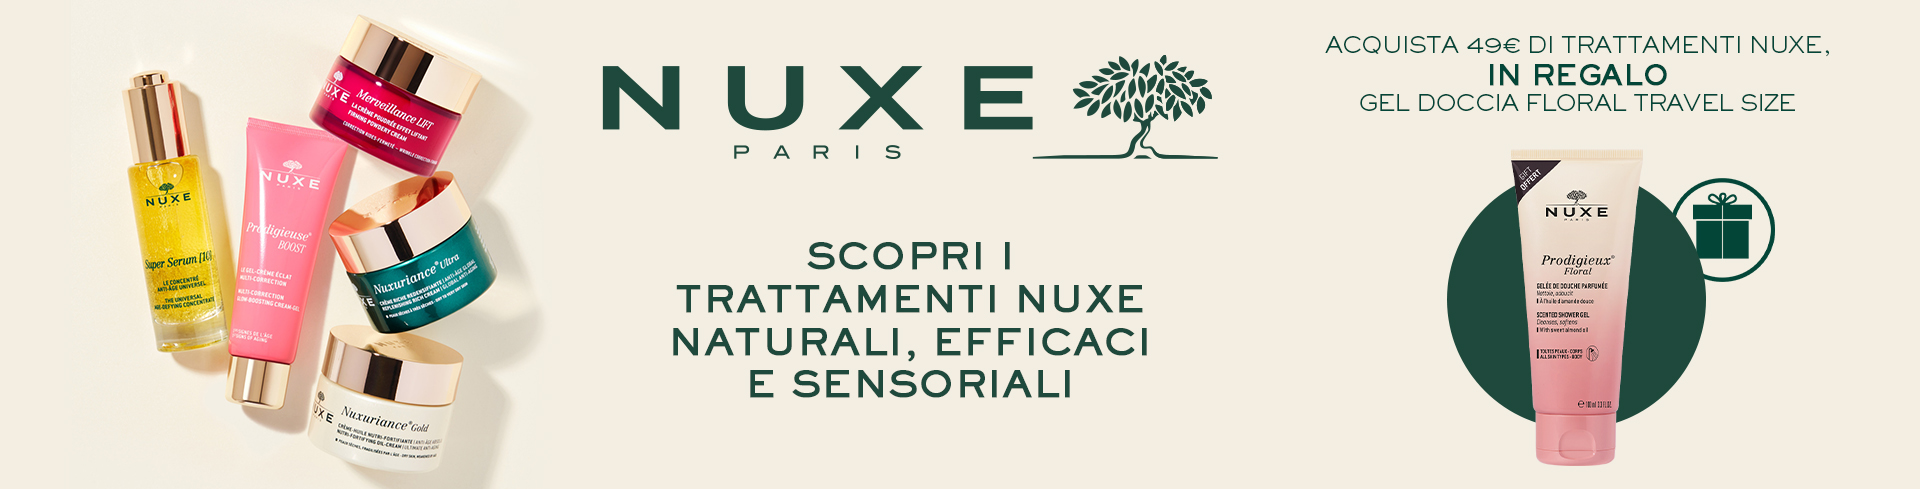 Nuxe: acquista 49€ di prodotti, ridcevi in regalo il gel doccia floral travel size 100ml!